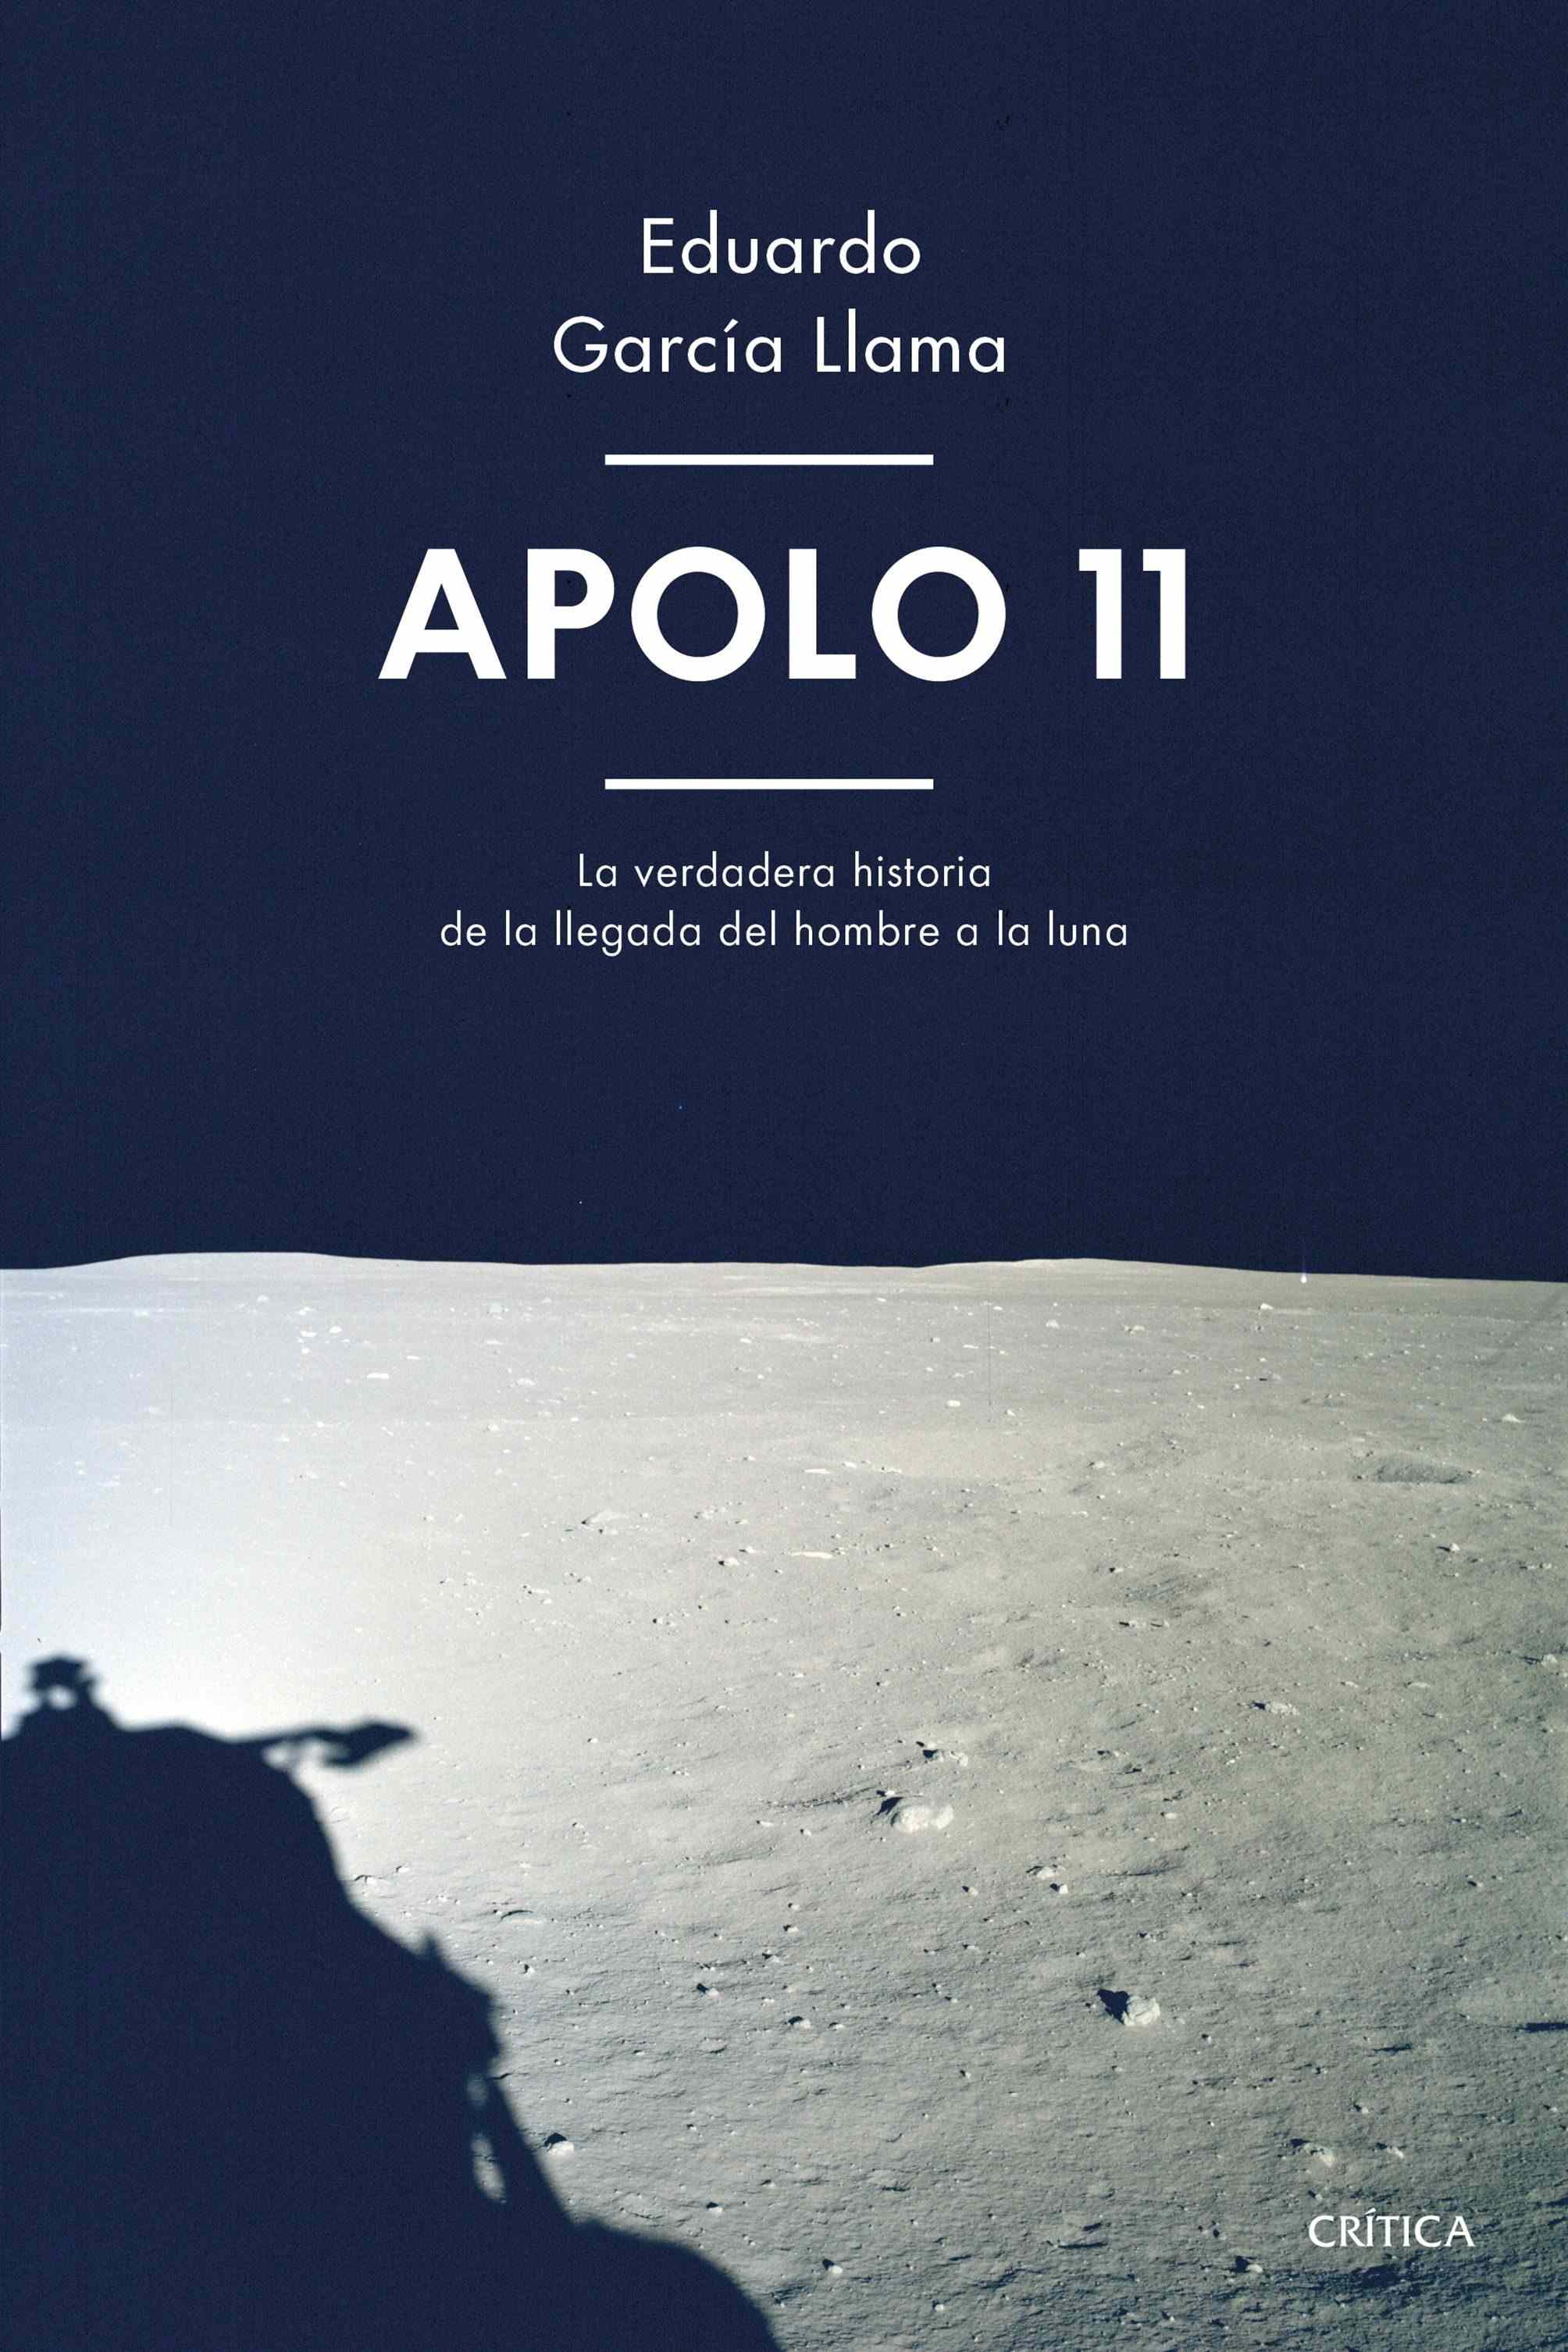 Portada del libro APOLO 11. La apasionante historia de cómo el hombre pisó la Luna por primera vez